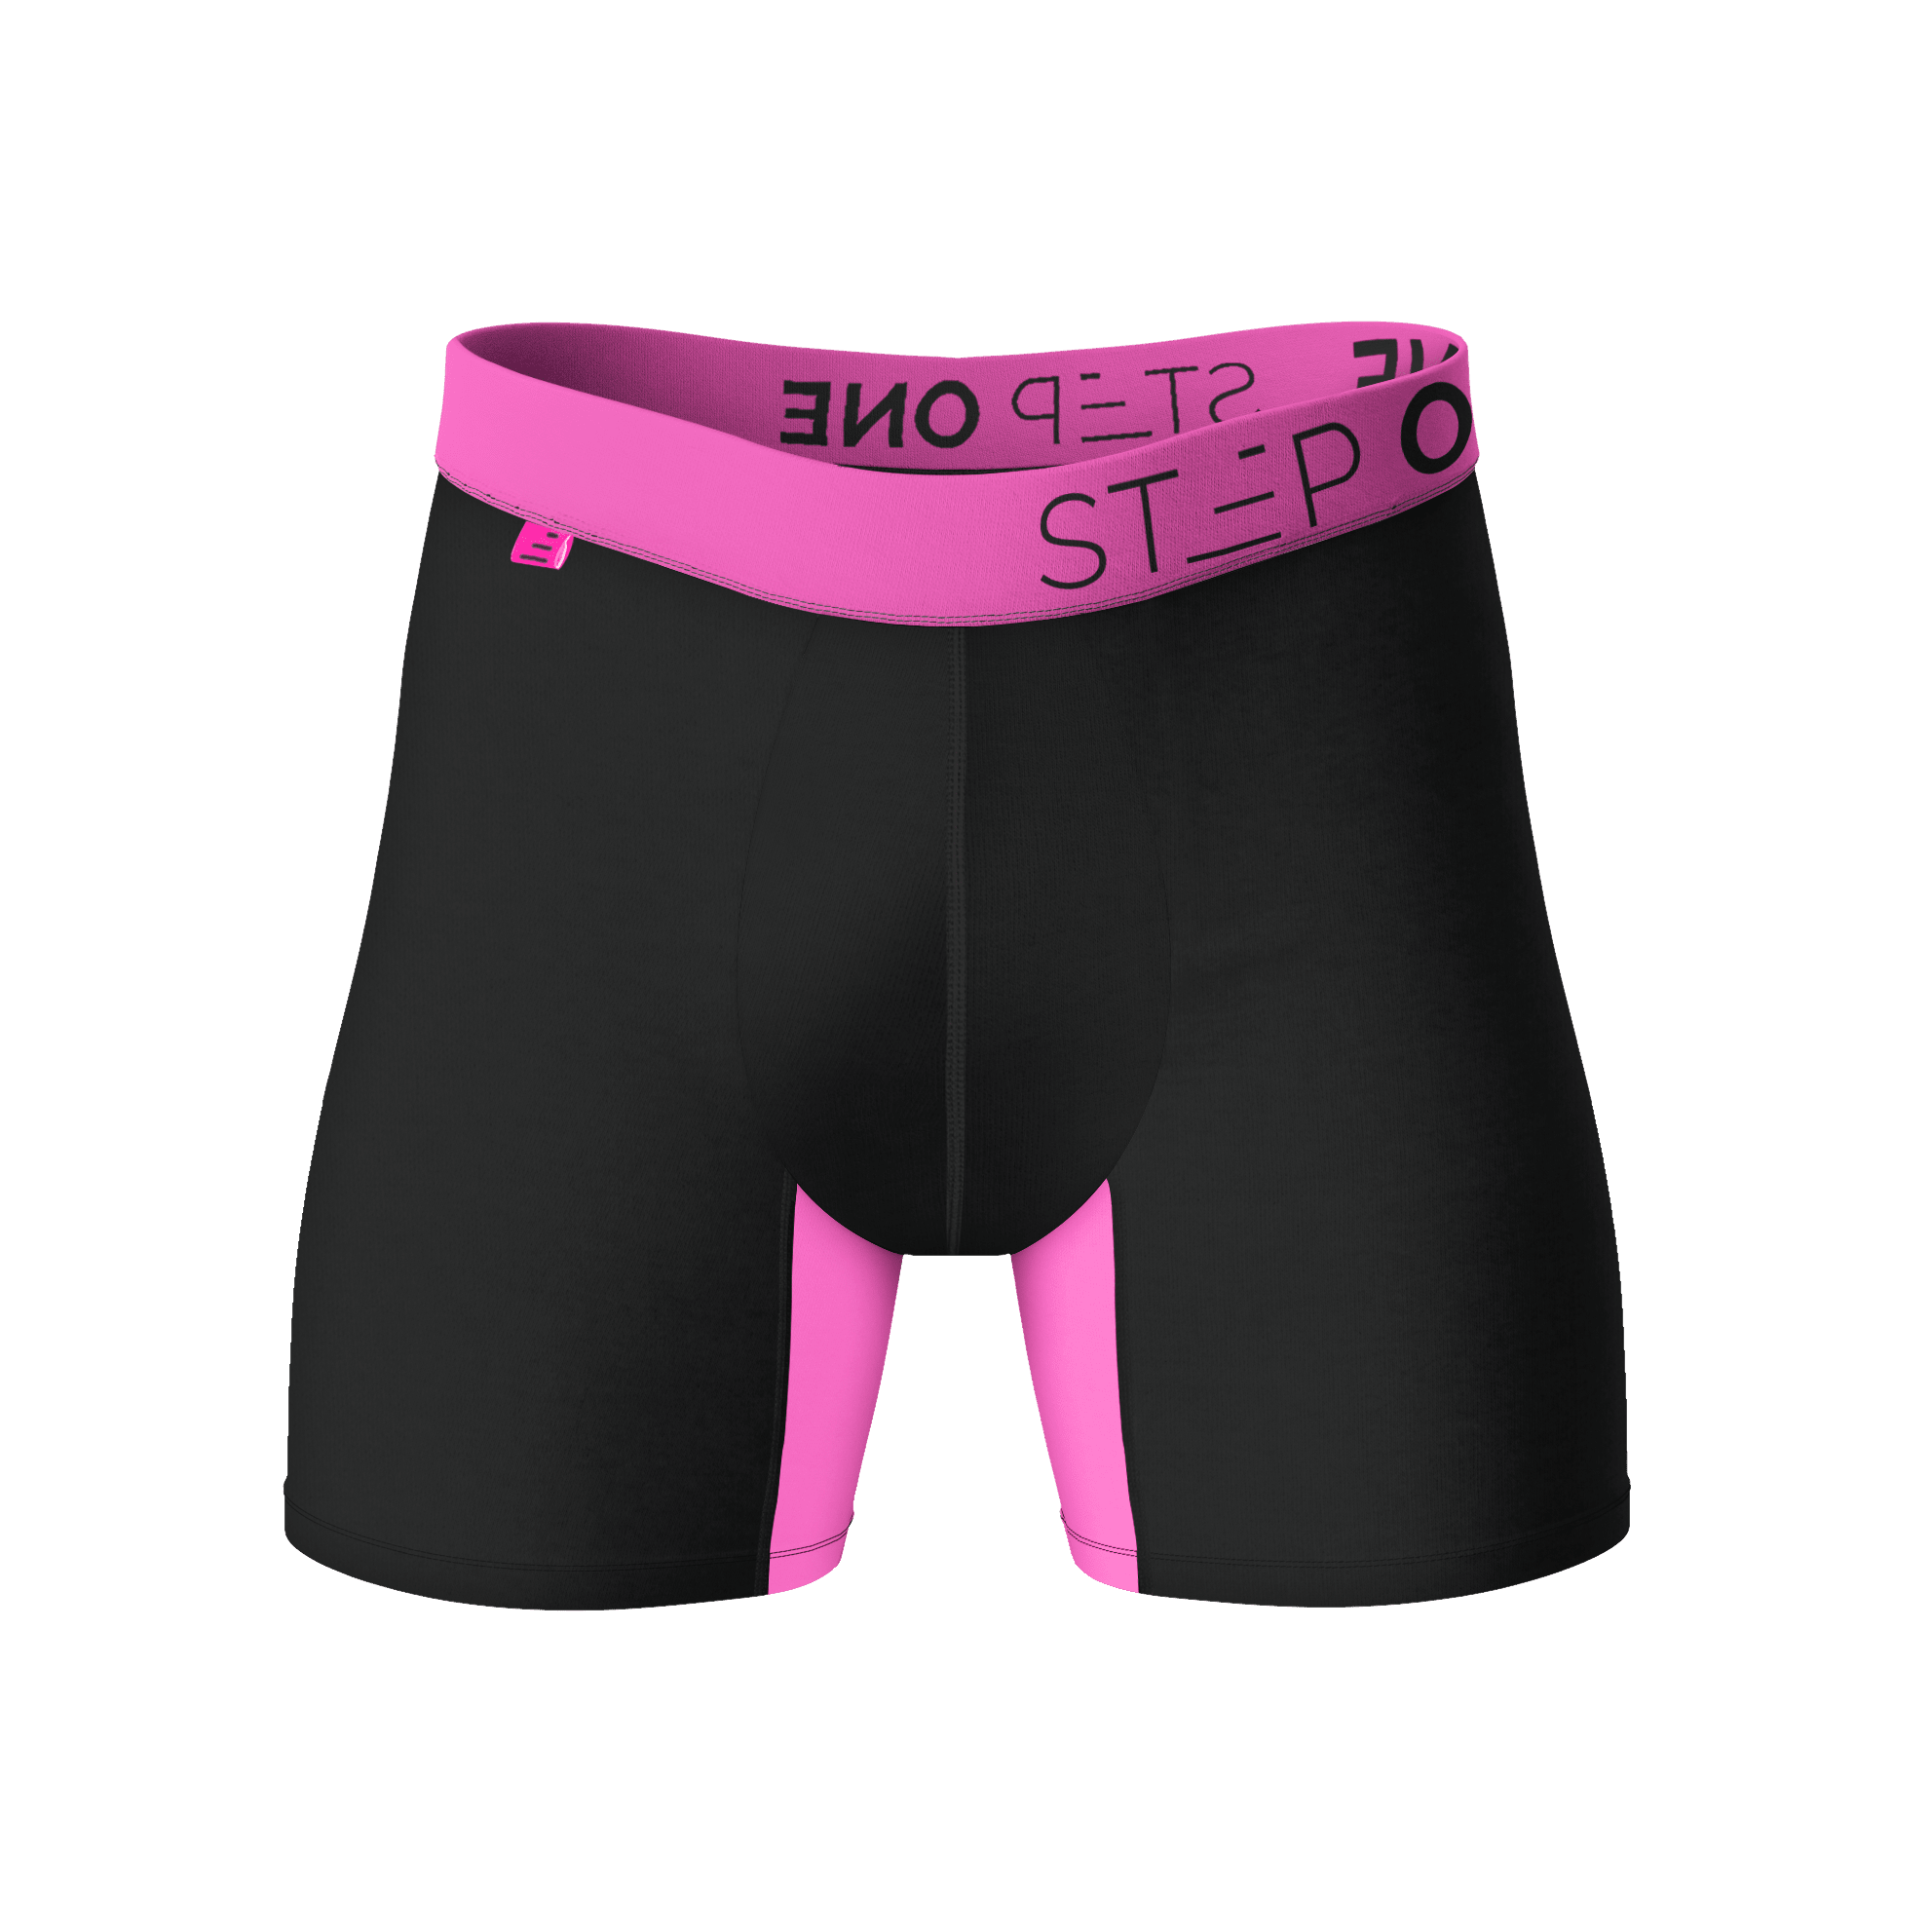 Boxer Brief - Hot Sauce  Step One Men's Underwear US